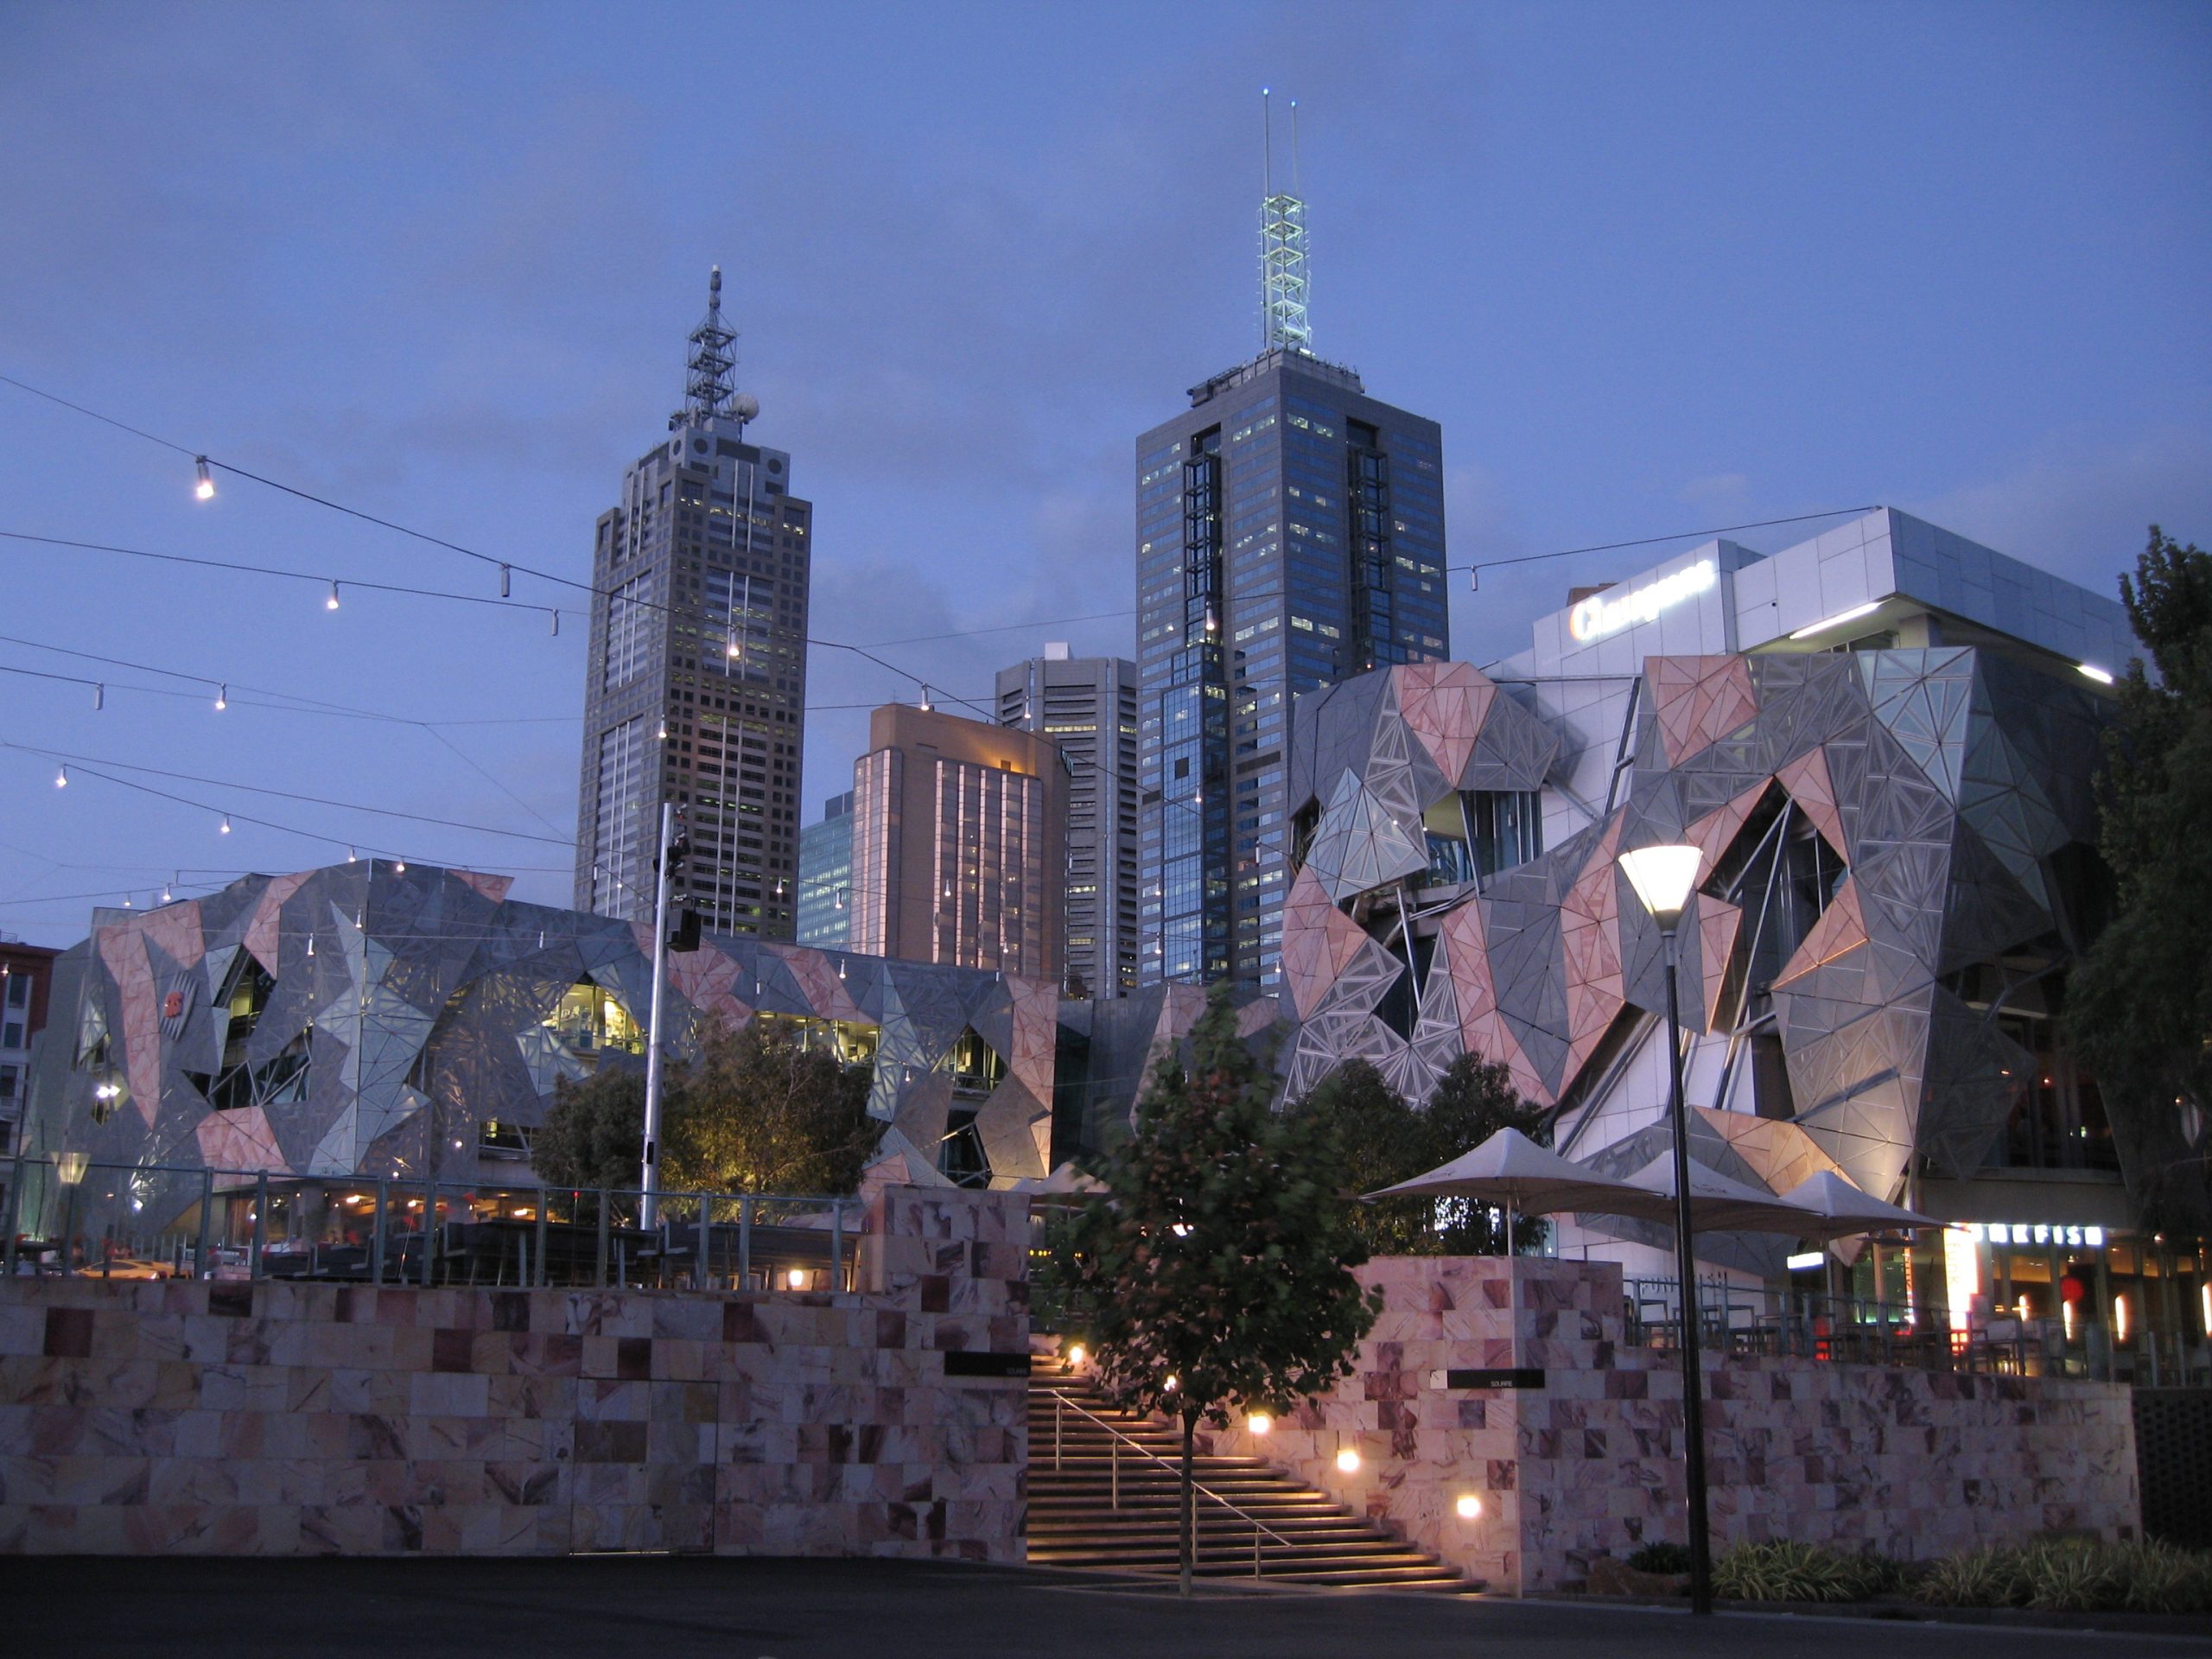 Federation Square in Melbourne, Australia.